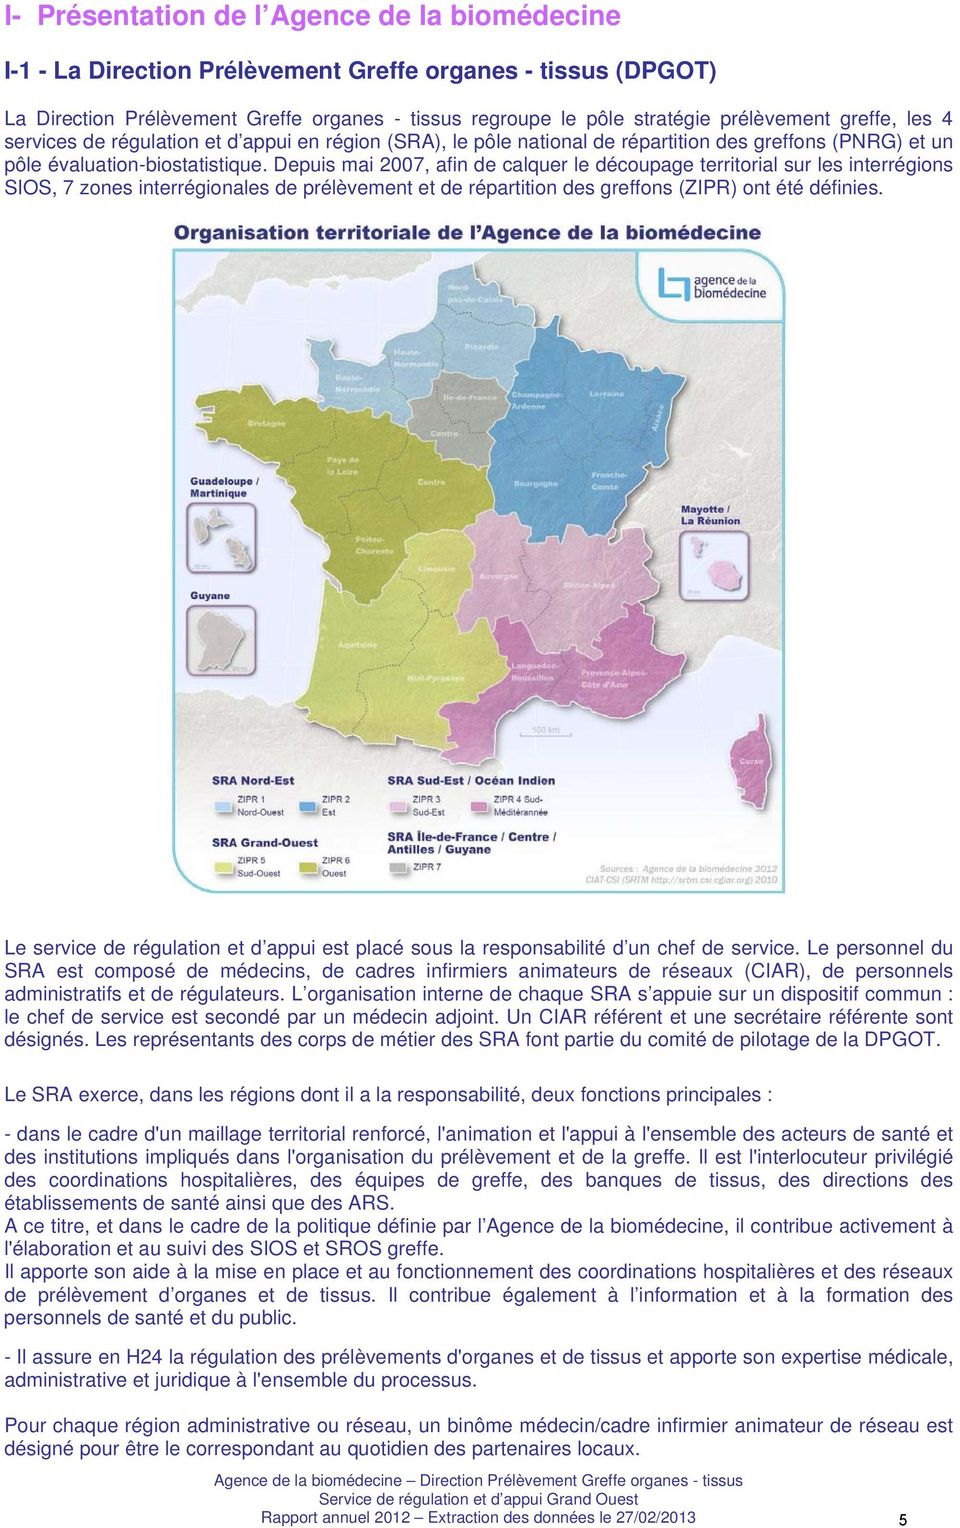 Depuis mai 2007, afin de calquer le découpage territorial sur les interrégions SIOS, 7 zones interrégionales de prélèvement et de répartition des greffons (ZIPR) ont été définies.